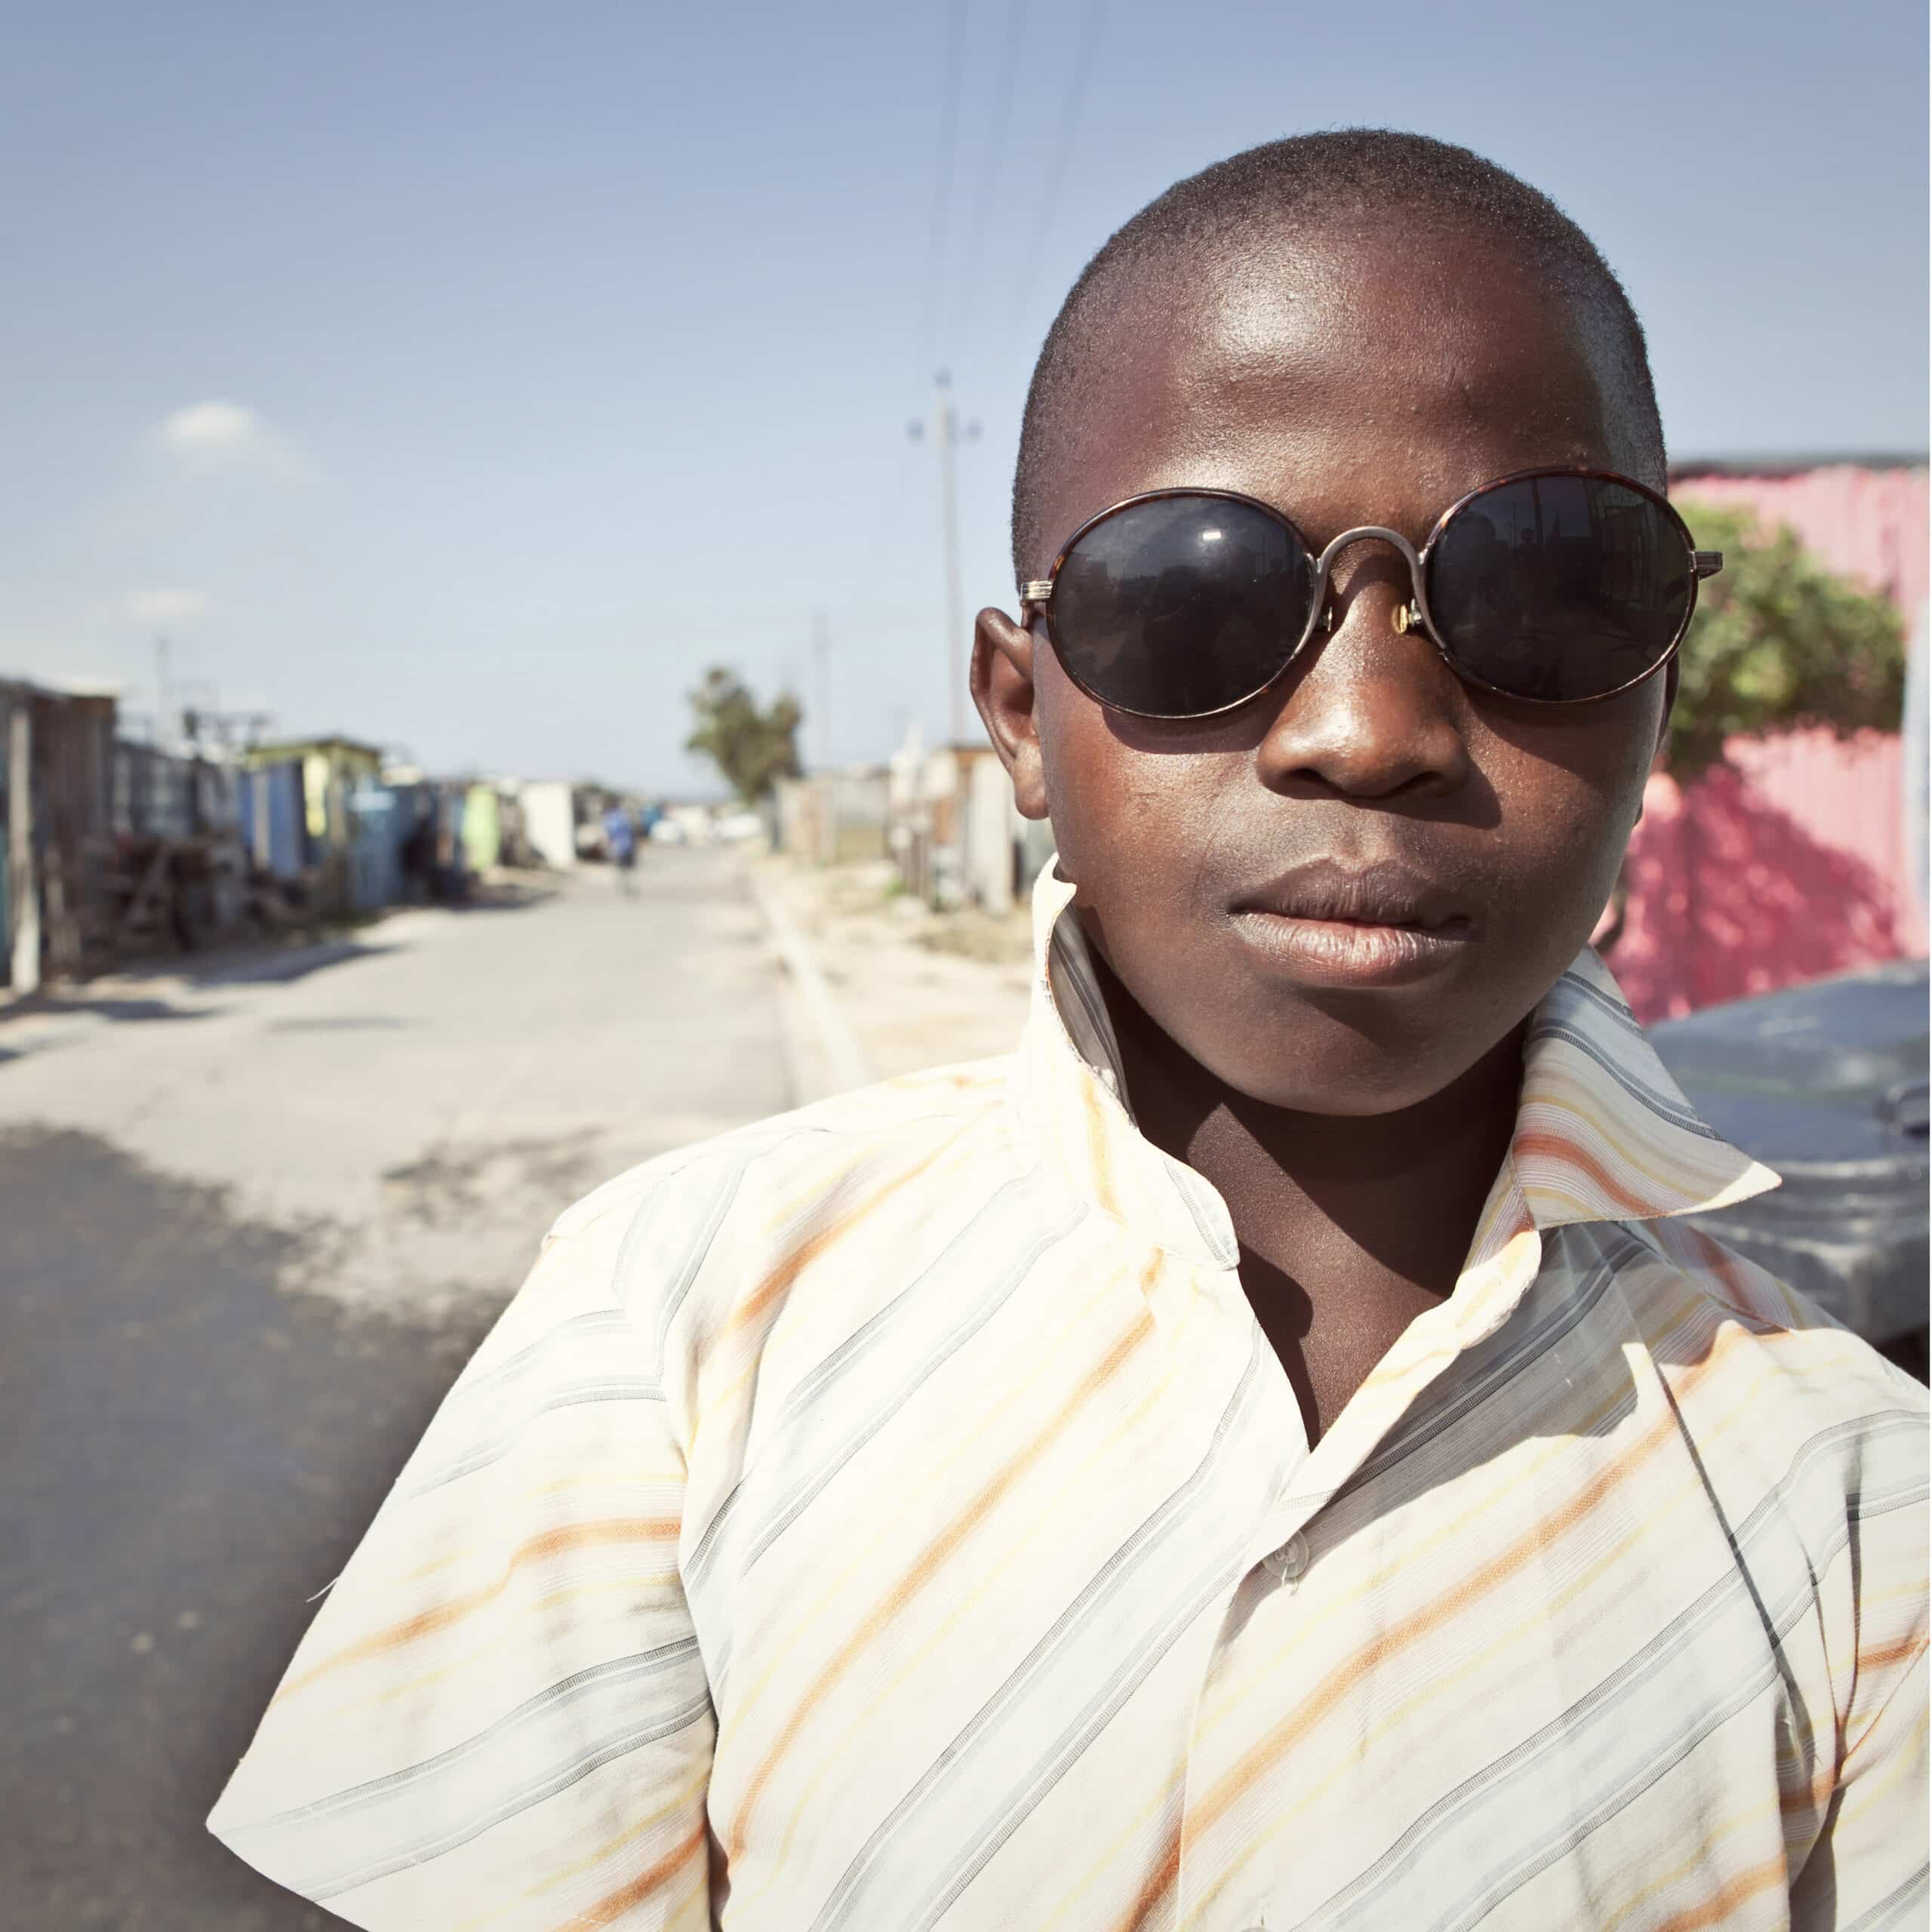 Ein kleiner Junge mit Sonnenbrille und gestreiftem Hemd steht selbstbewusst in einer sonnenbeschienenen, ungezwungenen städtischen Umgebung und blickt direkt in die Kamera. © Fotografie Tomas Rodriguez